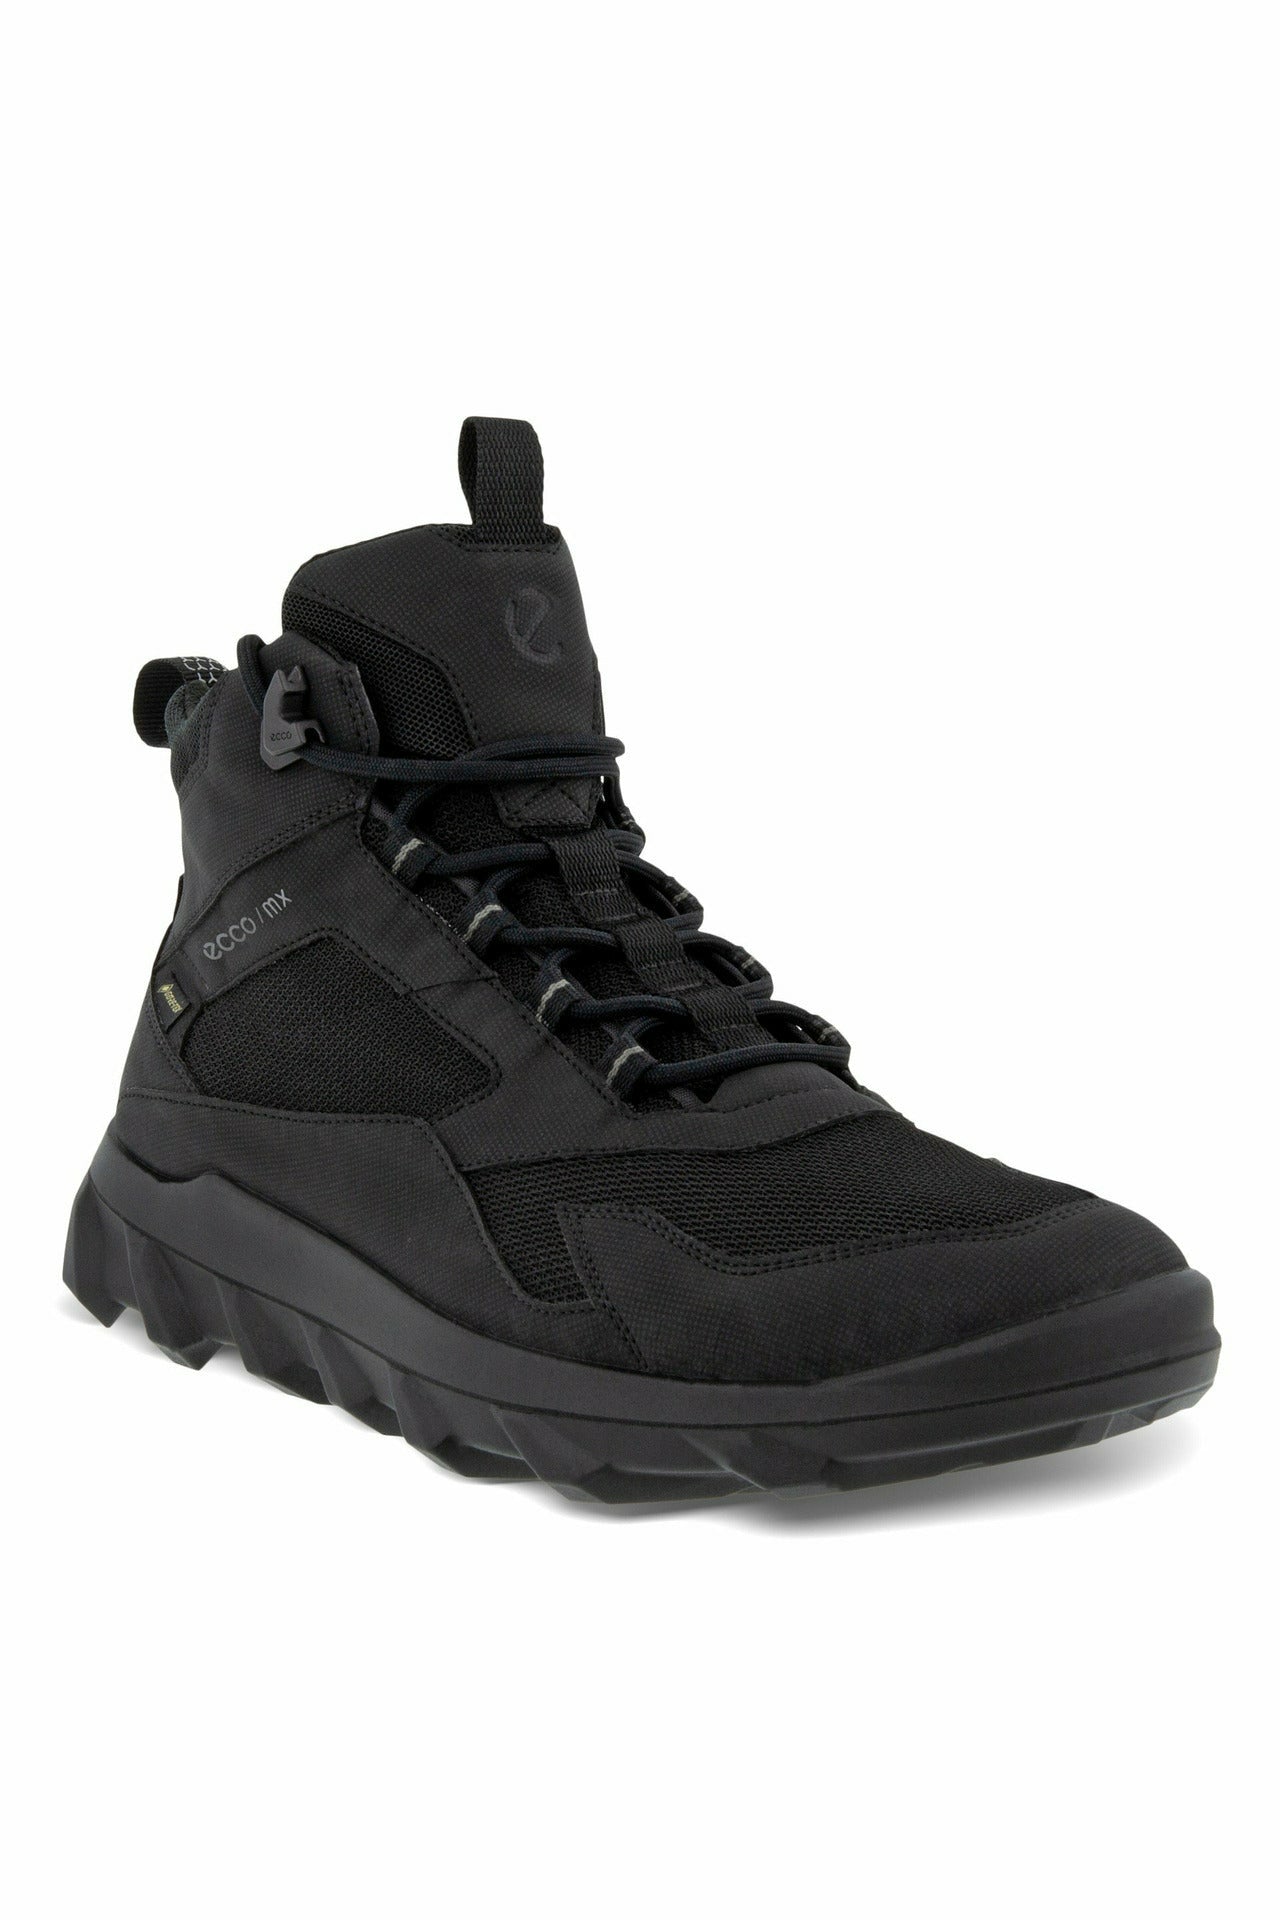 Ecco Mx Mens Walking boot 820224-51052